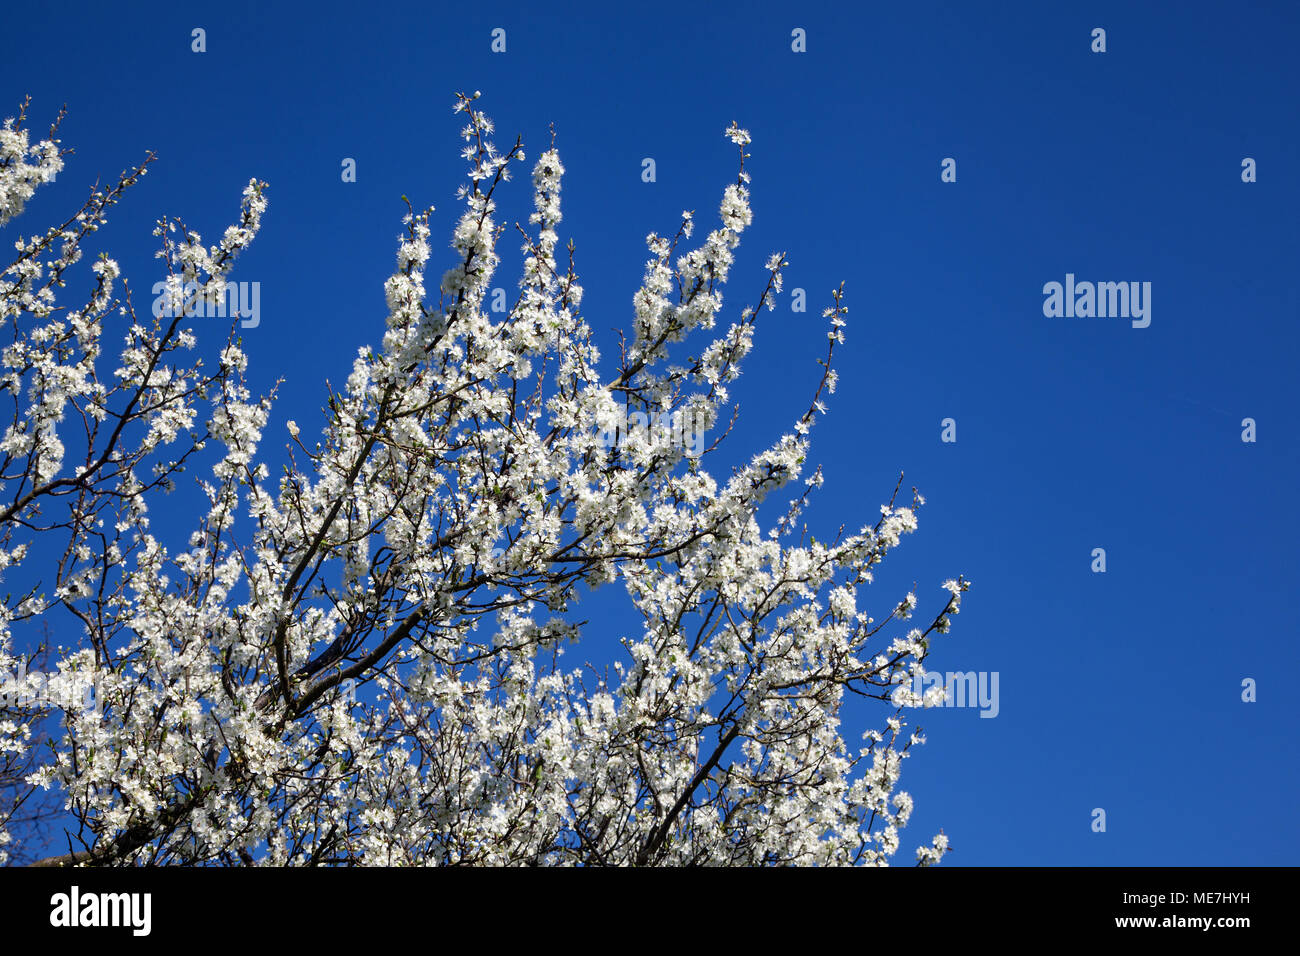 Damson albero in fiore che cresce in una siepe riga nella campagna inglese con cielo blu cielo Foto Stock